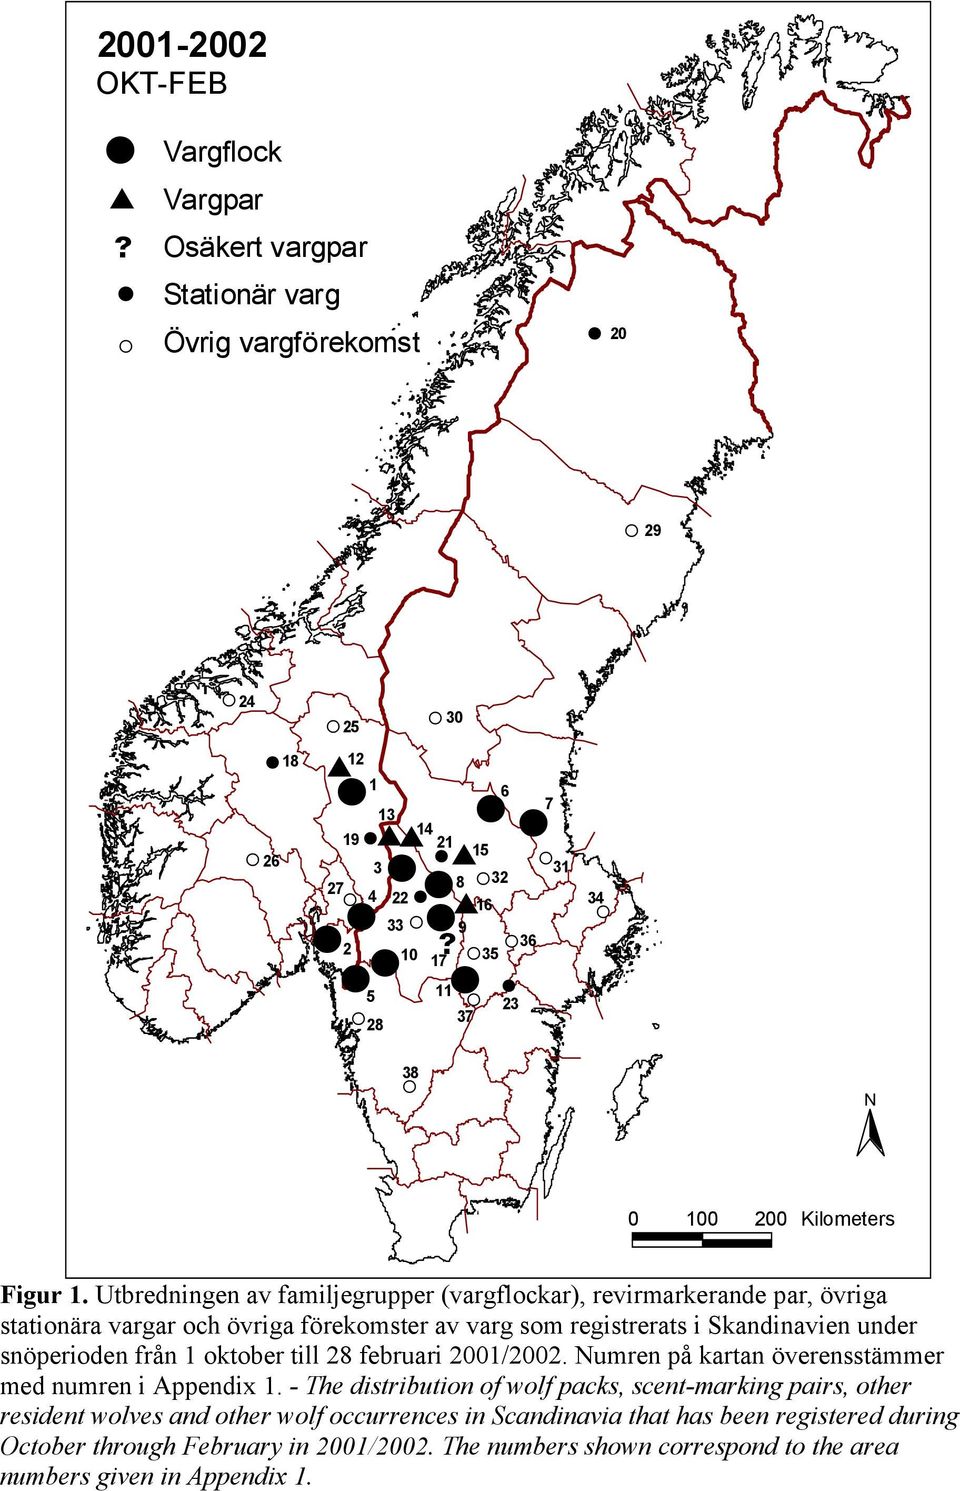 Utbredningen av familjegrupper (vargflockar), revirmarkerande par, övriga stationära vargar och övriga förekomster av varg som registrerats i Skandinavien under snöperioden från 1 oktober till 28